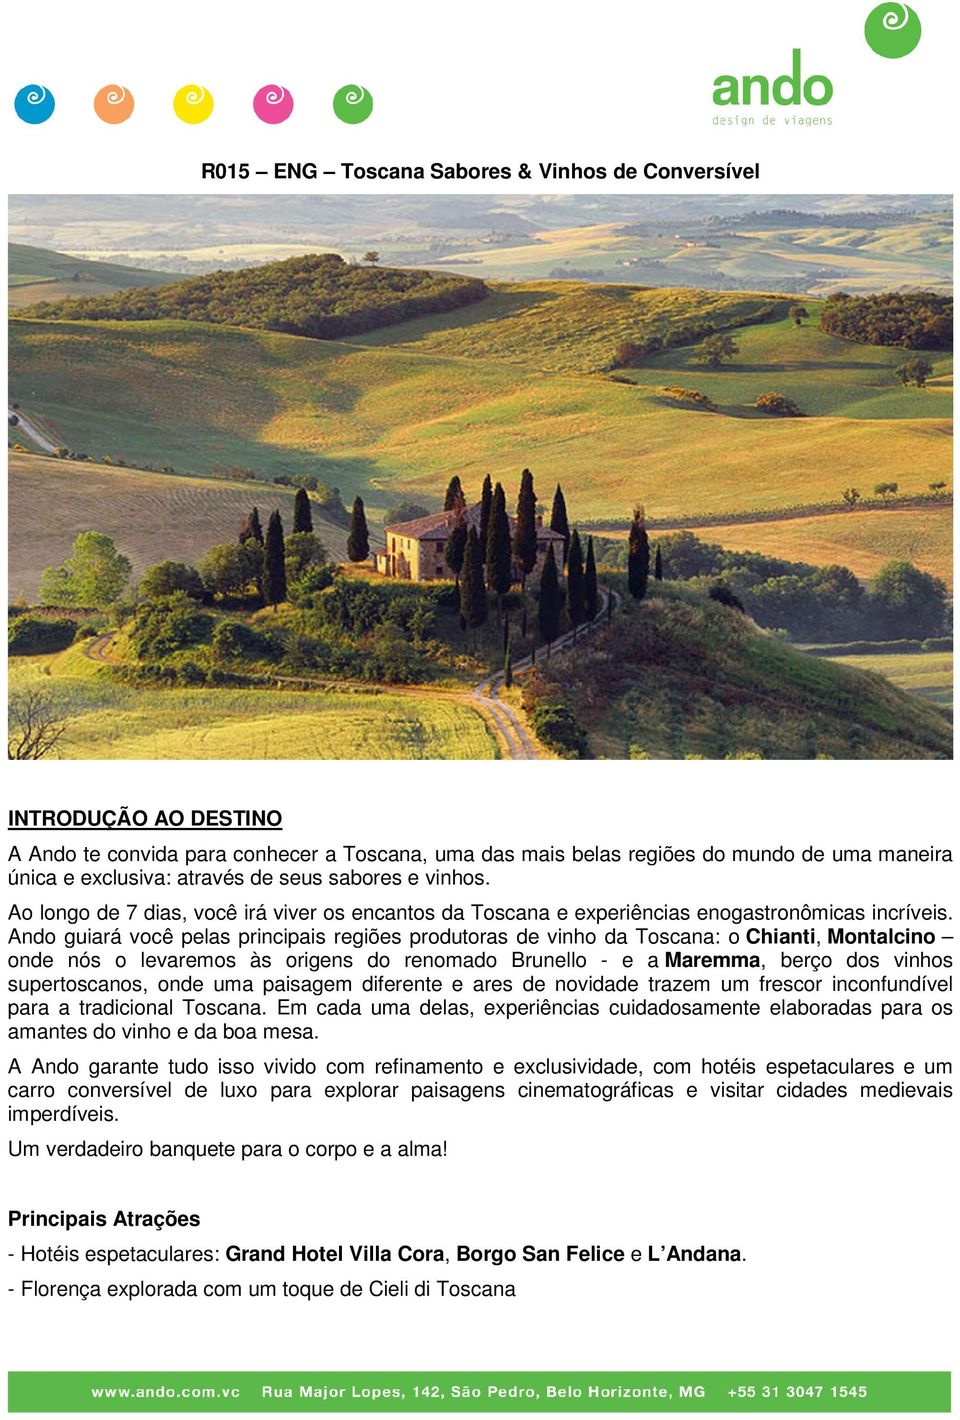 Ando guiará você pelas principais regiões produtoras de vinho da Toscana: o Chianti, Montalcino onde nós o levaremos às origens do renomado Brunello - e a Maremma, berço dos vinhos supertoscanos,